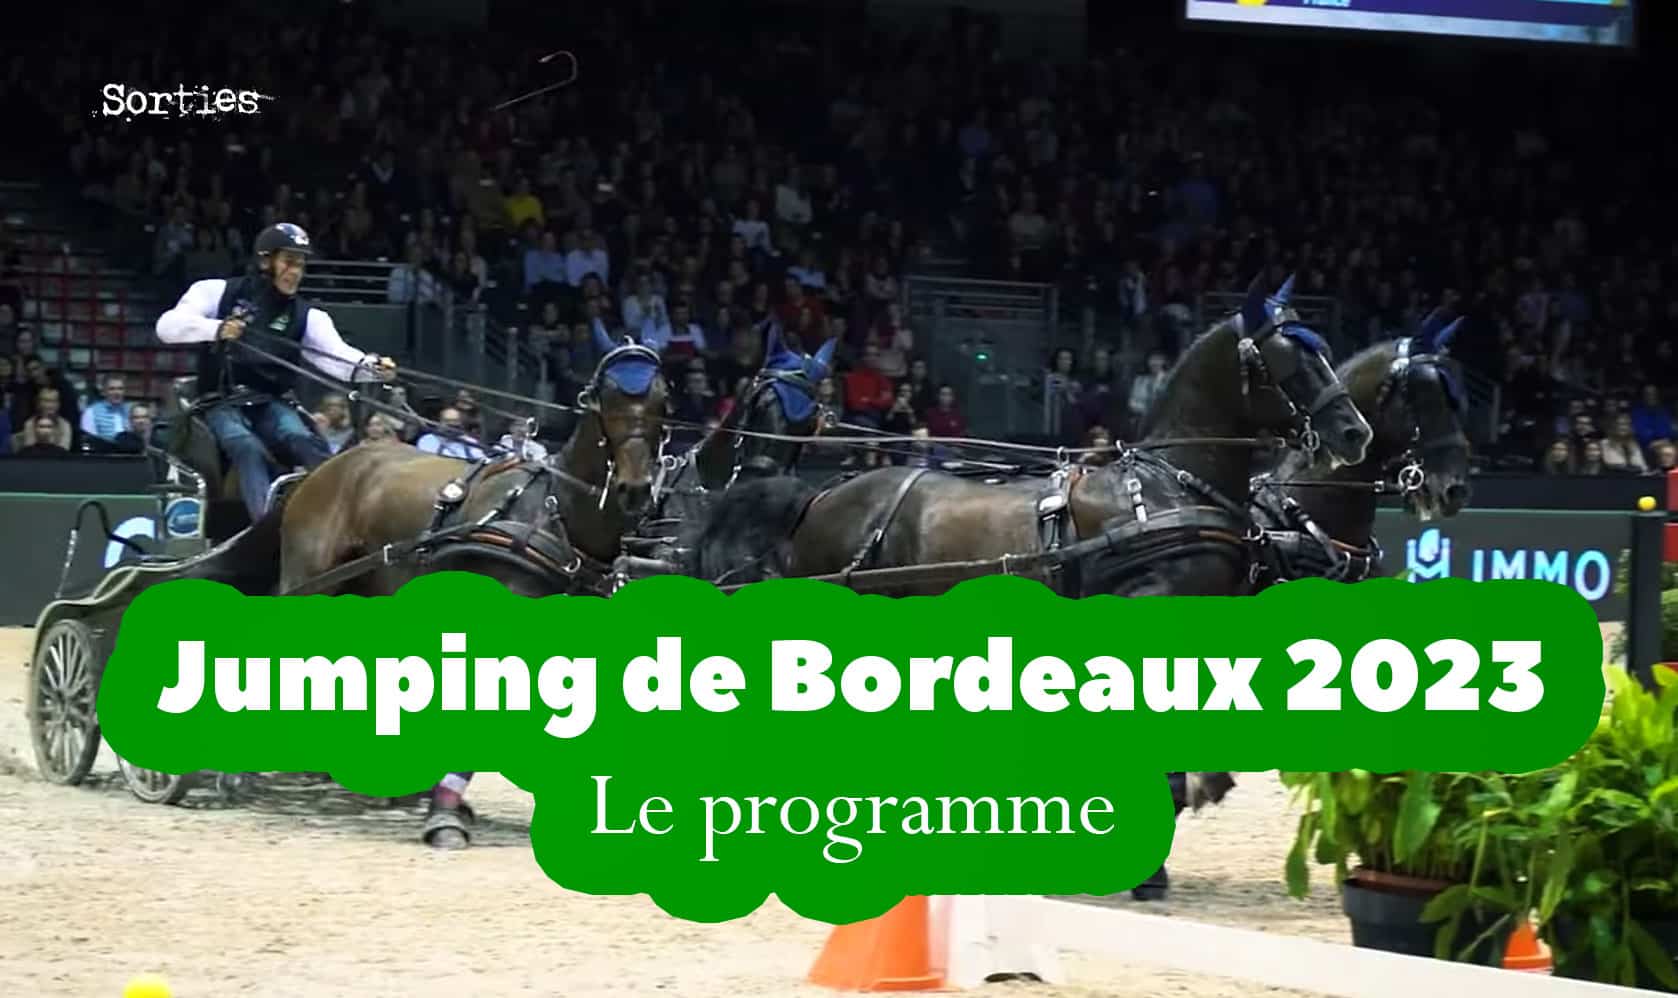 Jumping de Bordeaux 2023 programme